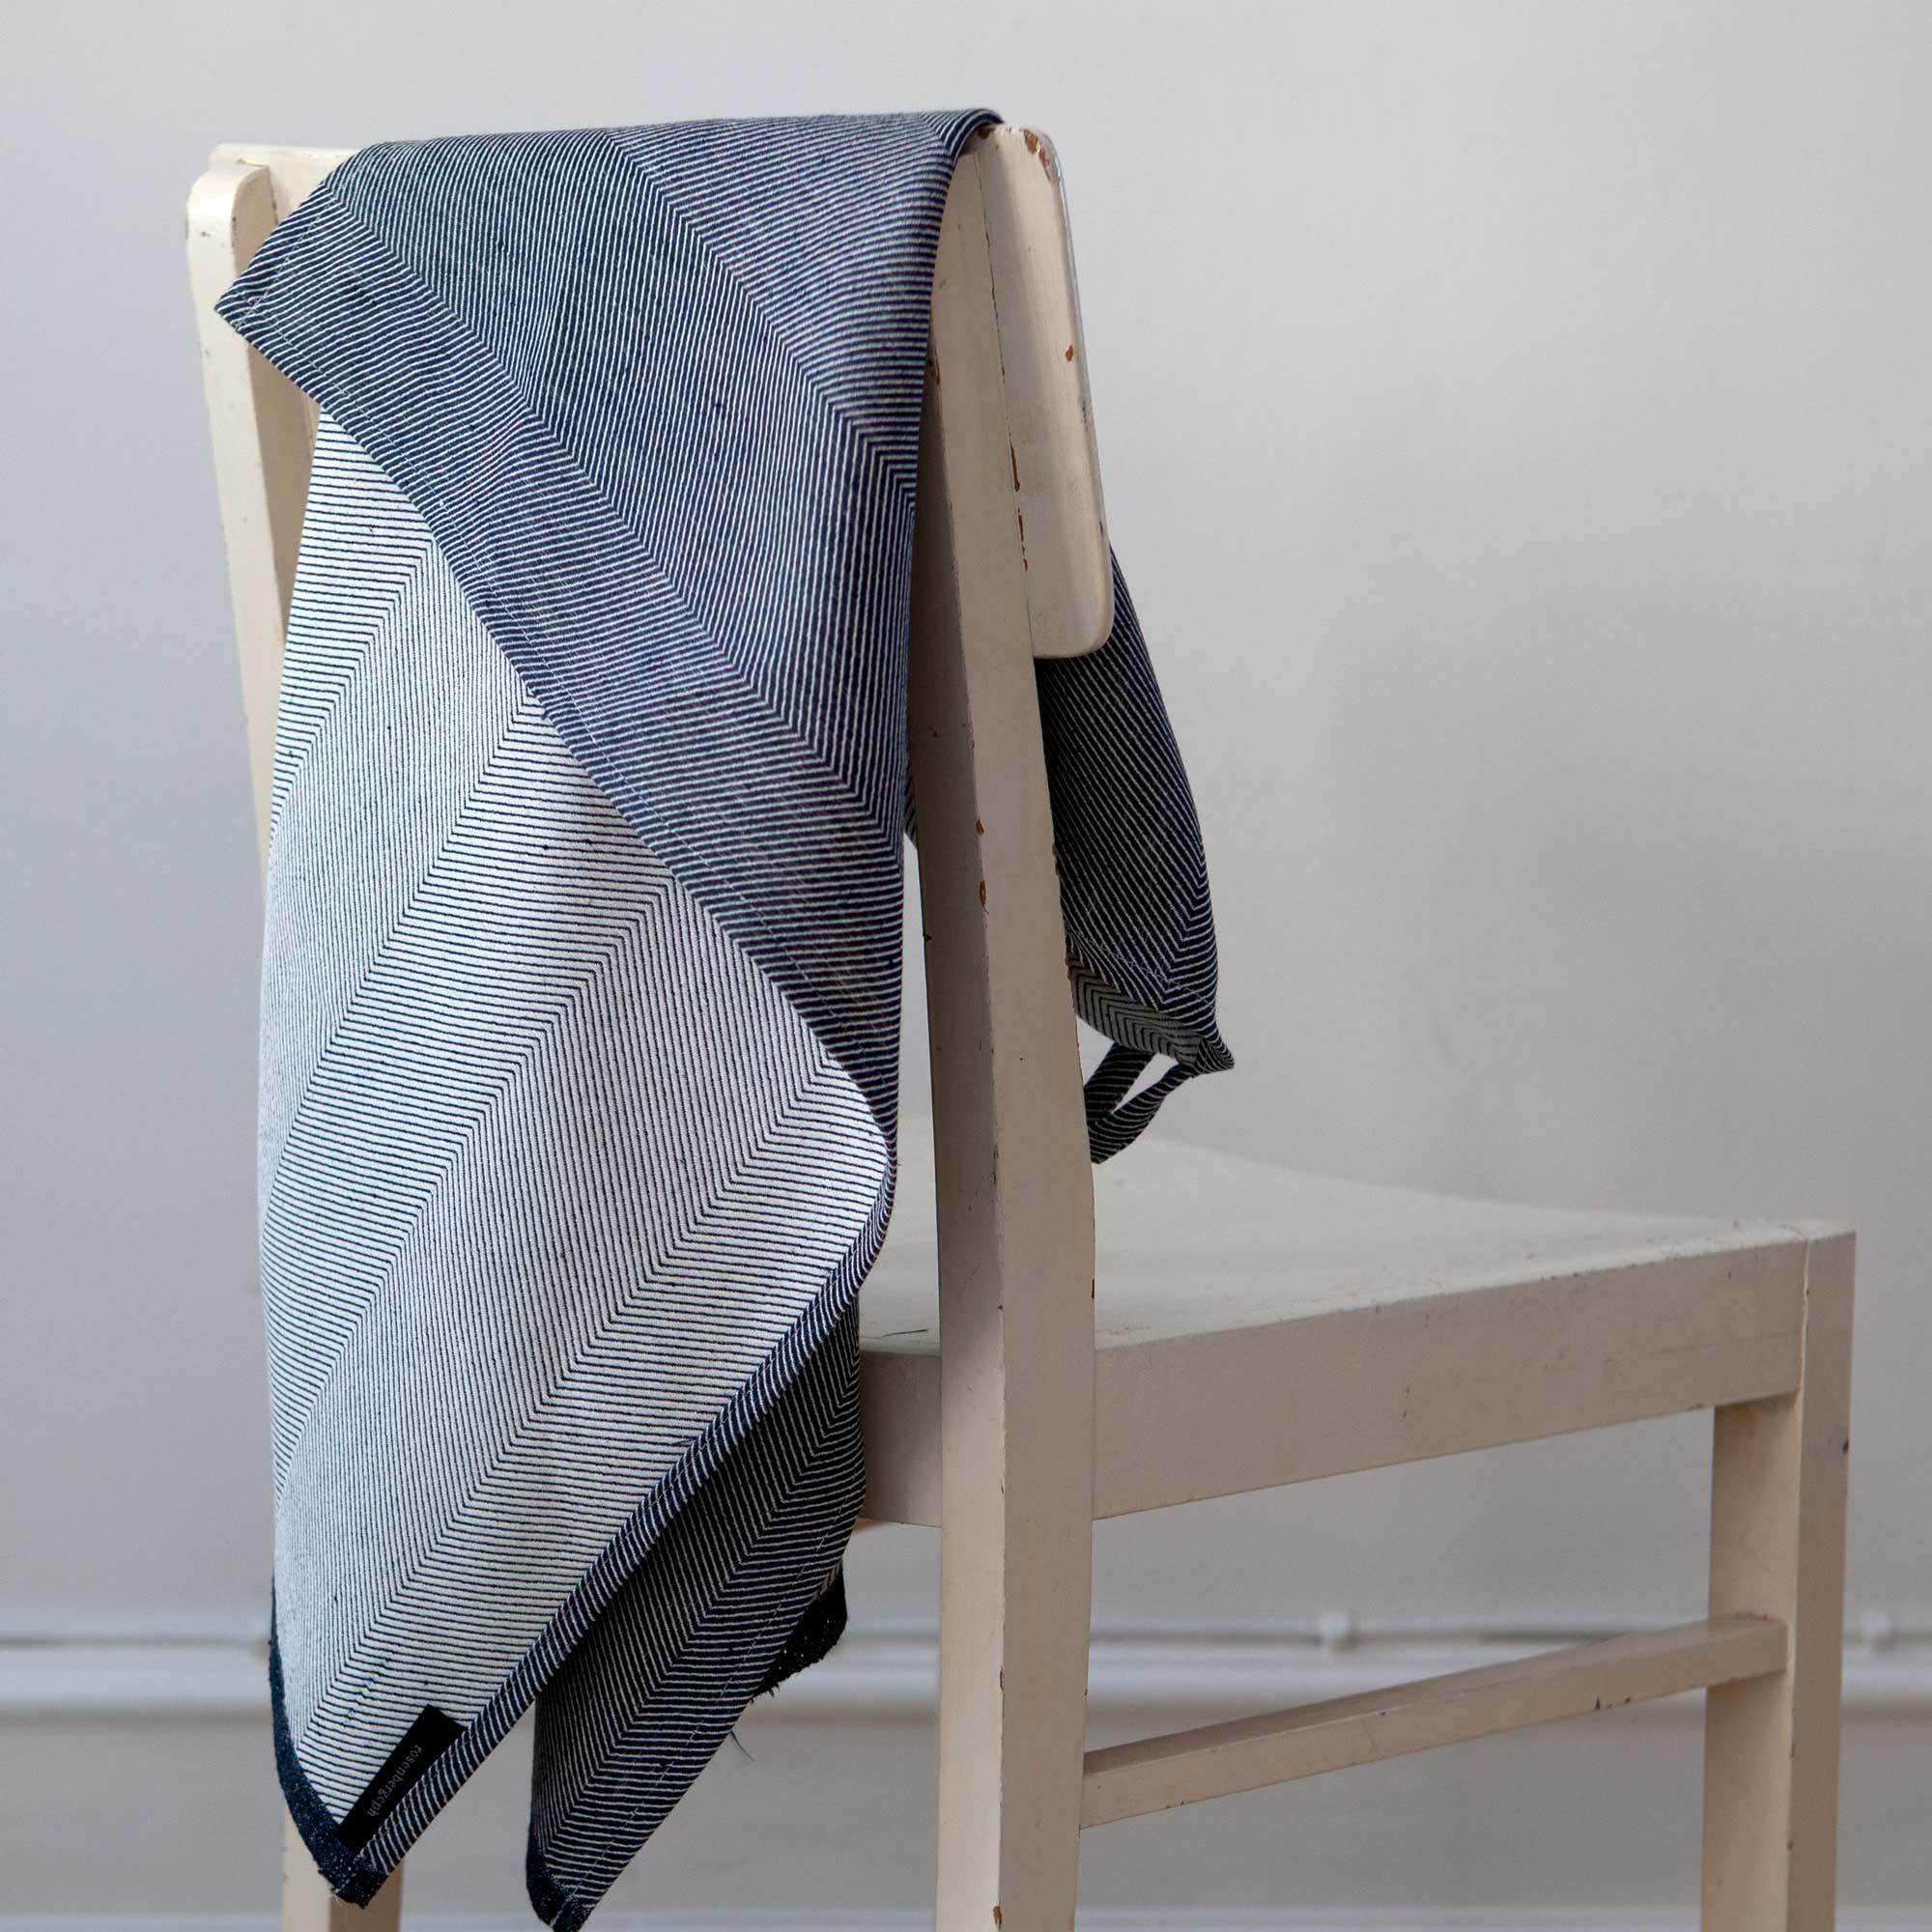 Towel, Indigo, linen/cotton, design by Anne Rosenberg, RosenbergCph